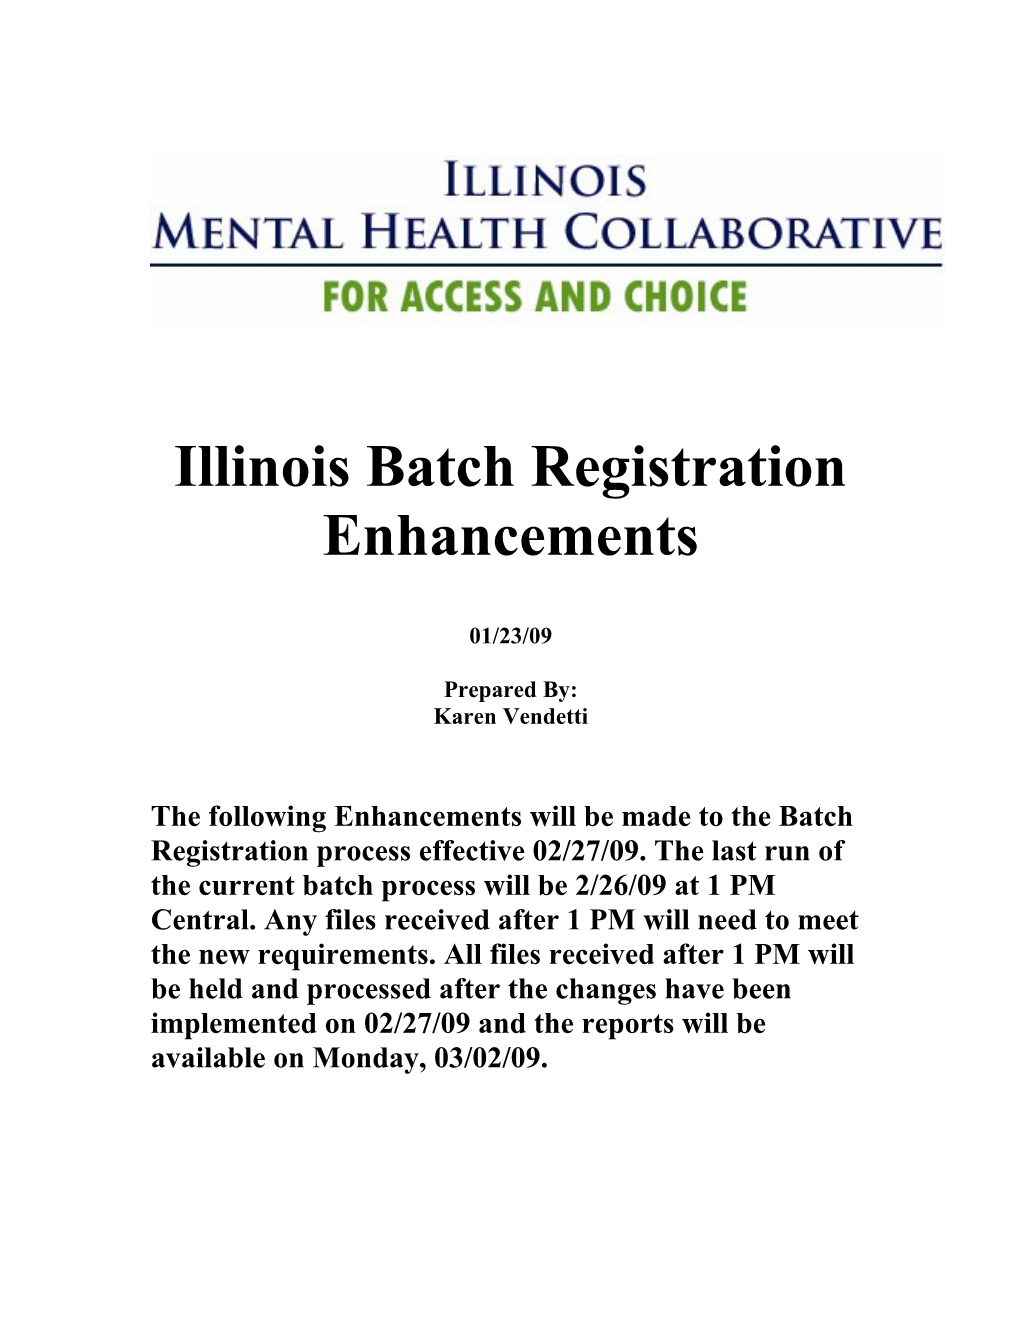 Illinois Batch Registration Enhancements